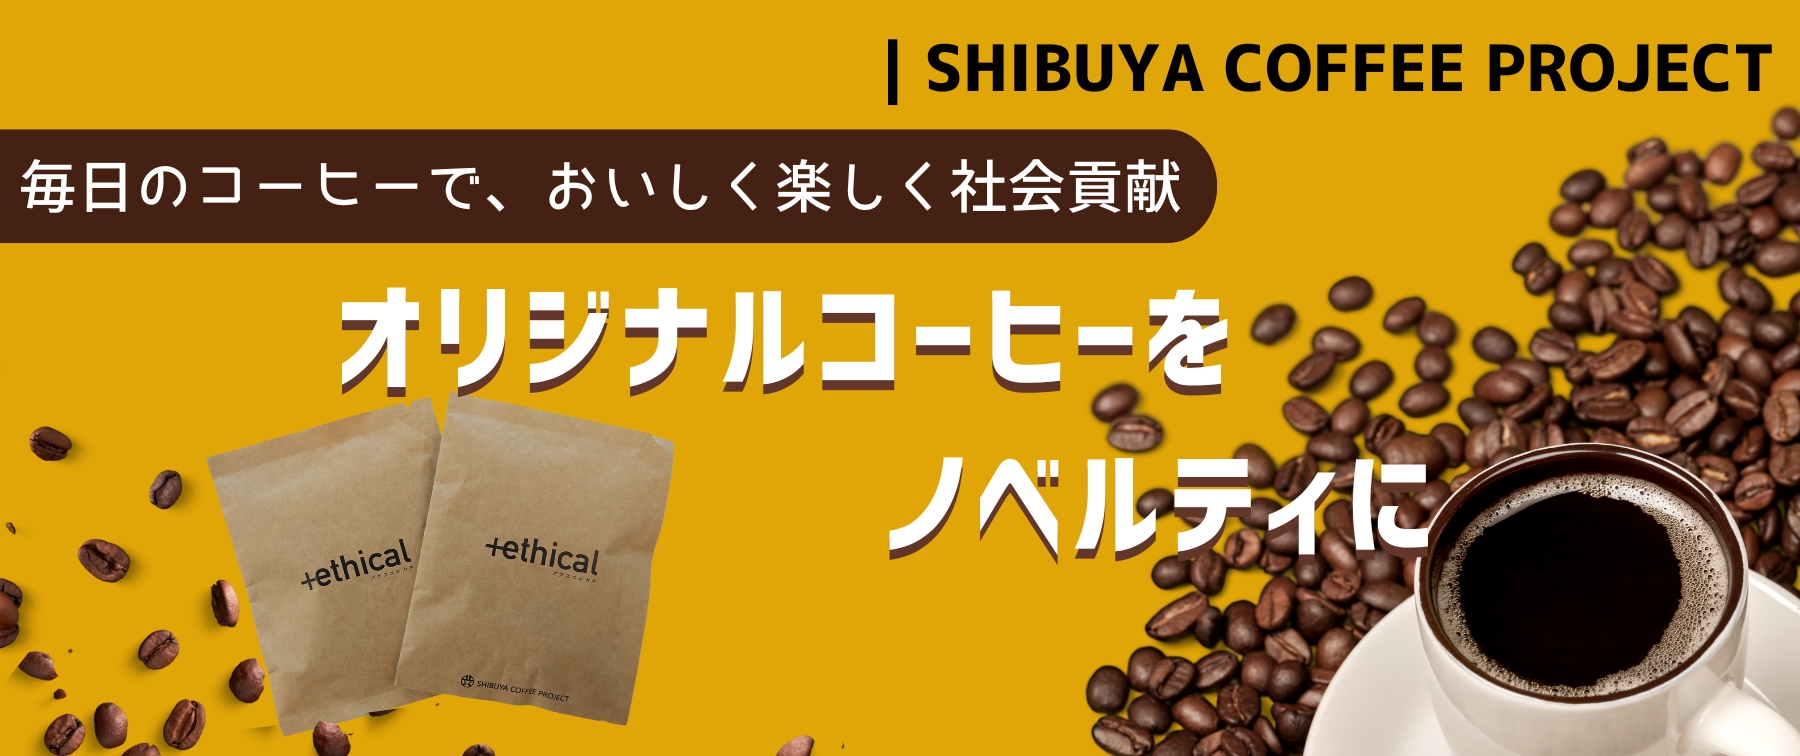 【オリジナルコーヒーをノベルティに】毎日のコーヒーでおいしく楽しく社会貢献｜SHIBUYA COFFEE PROJECT